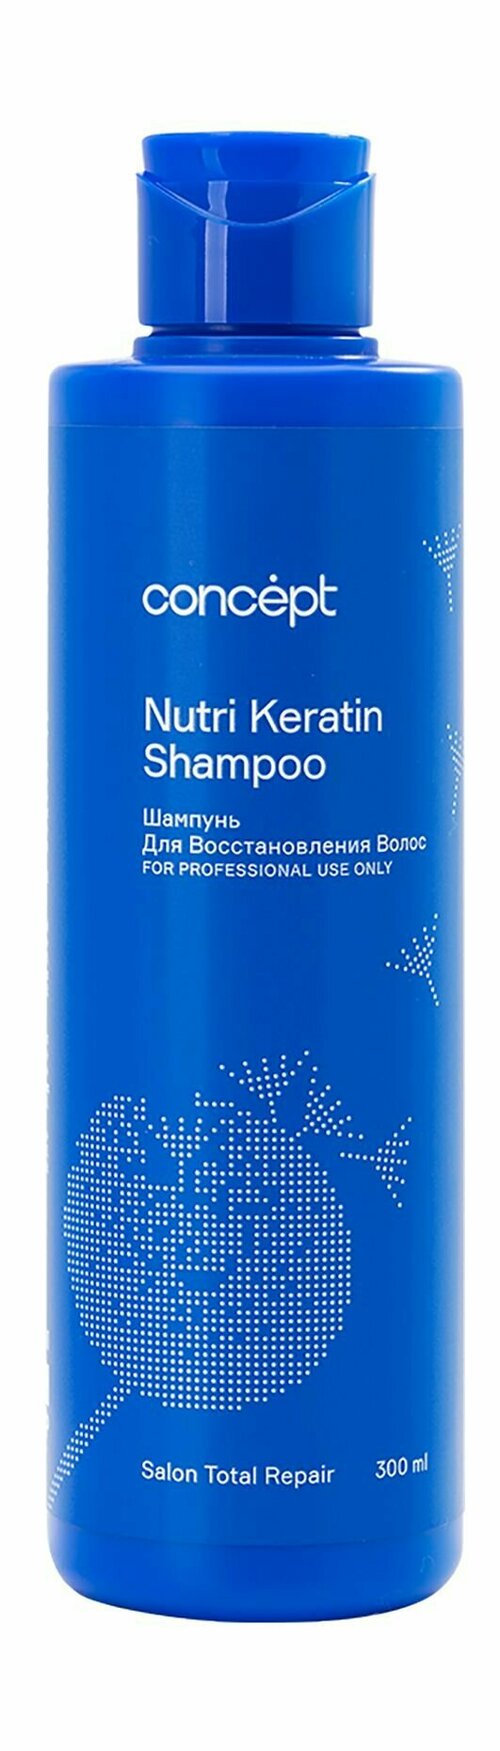 Шампунь для восстановления волос с кератином в обновленном дизайне / Concept Nutri Keratin Shampoo